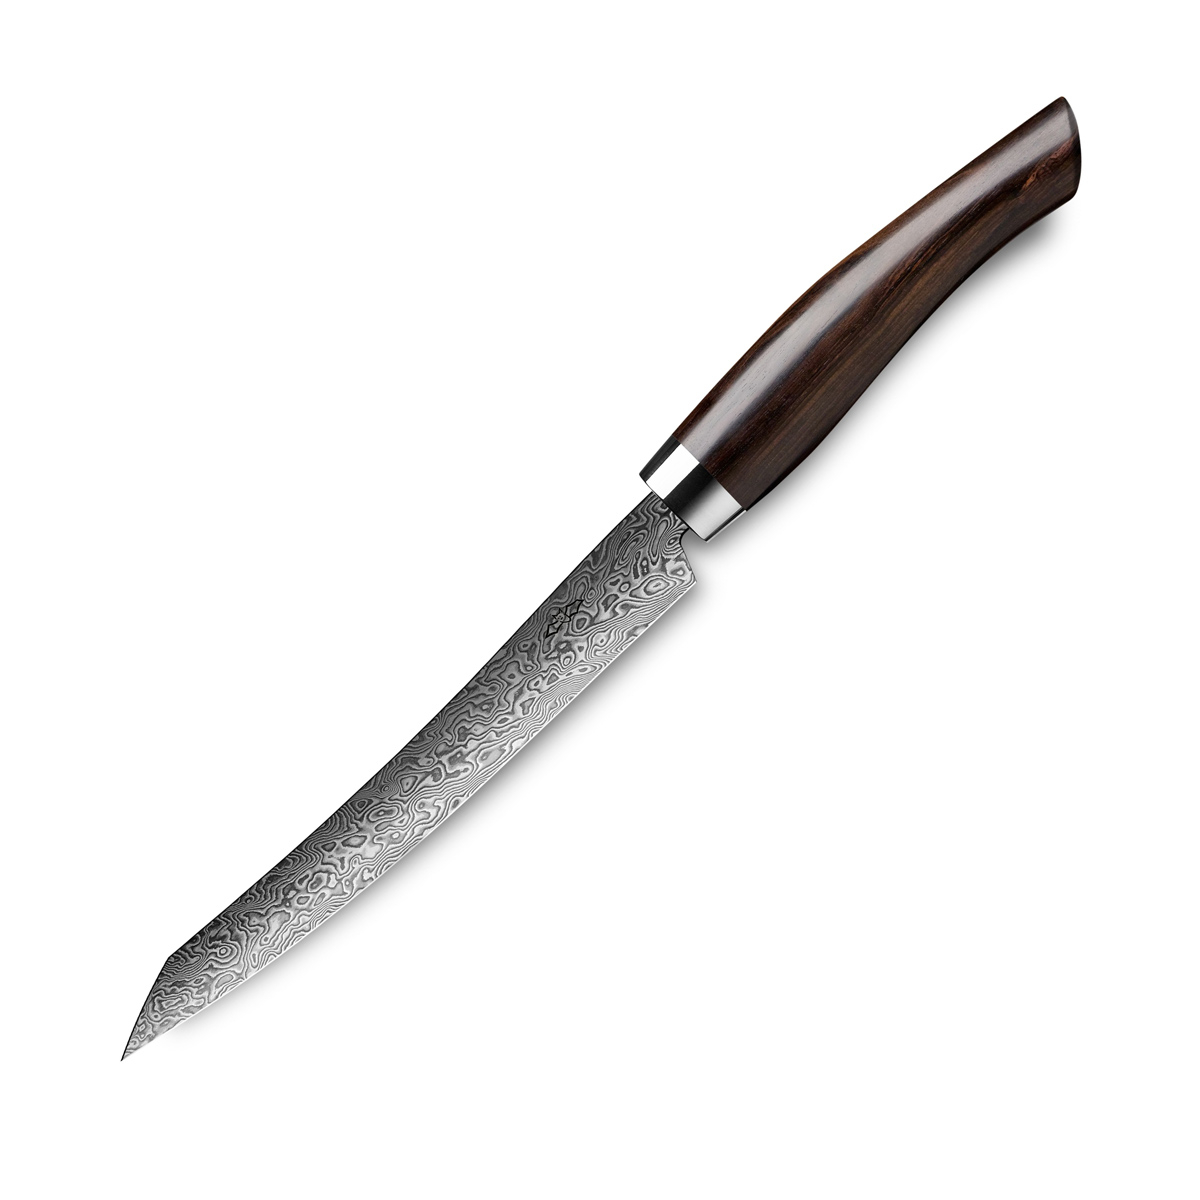 Nesmuk Exklusiv C 90 Damast Slicer 16 cm - Griff Grenadillholz